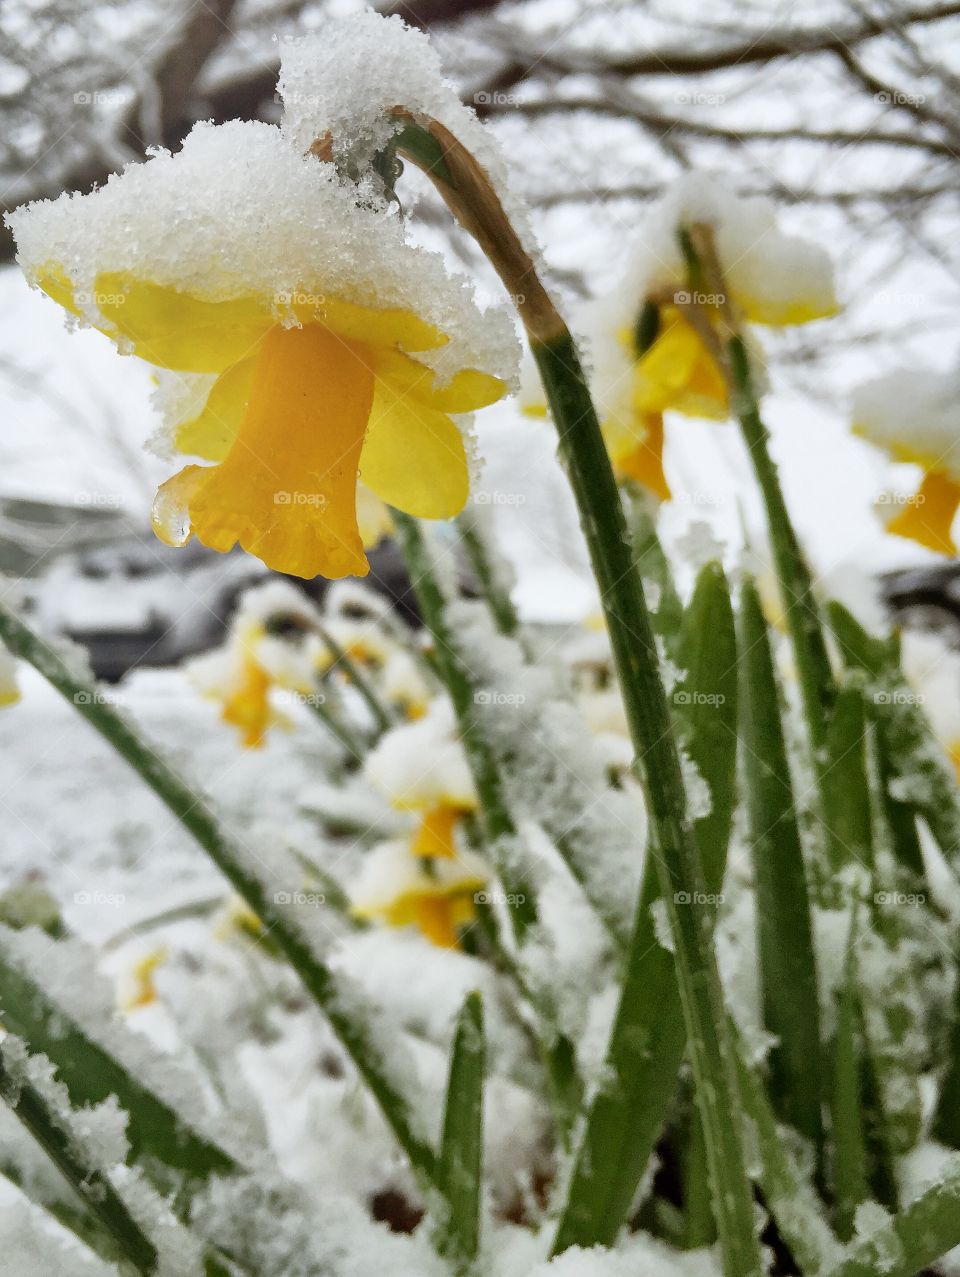 Snow on daffodil